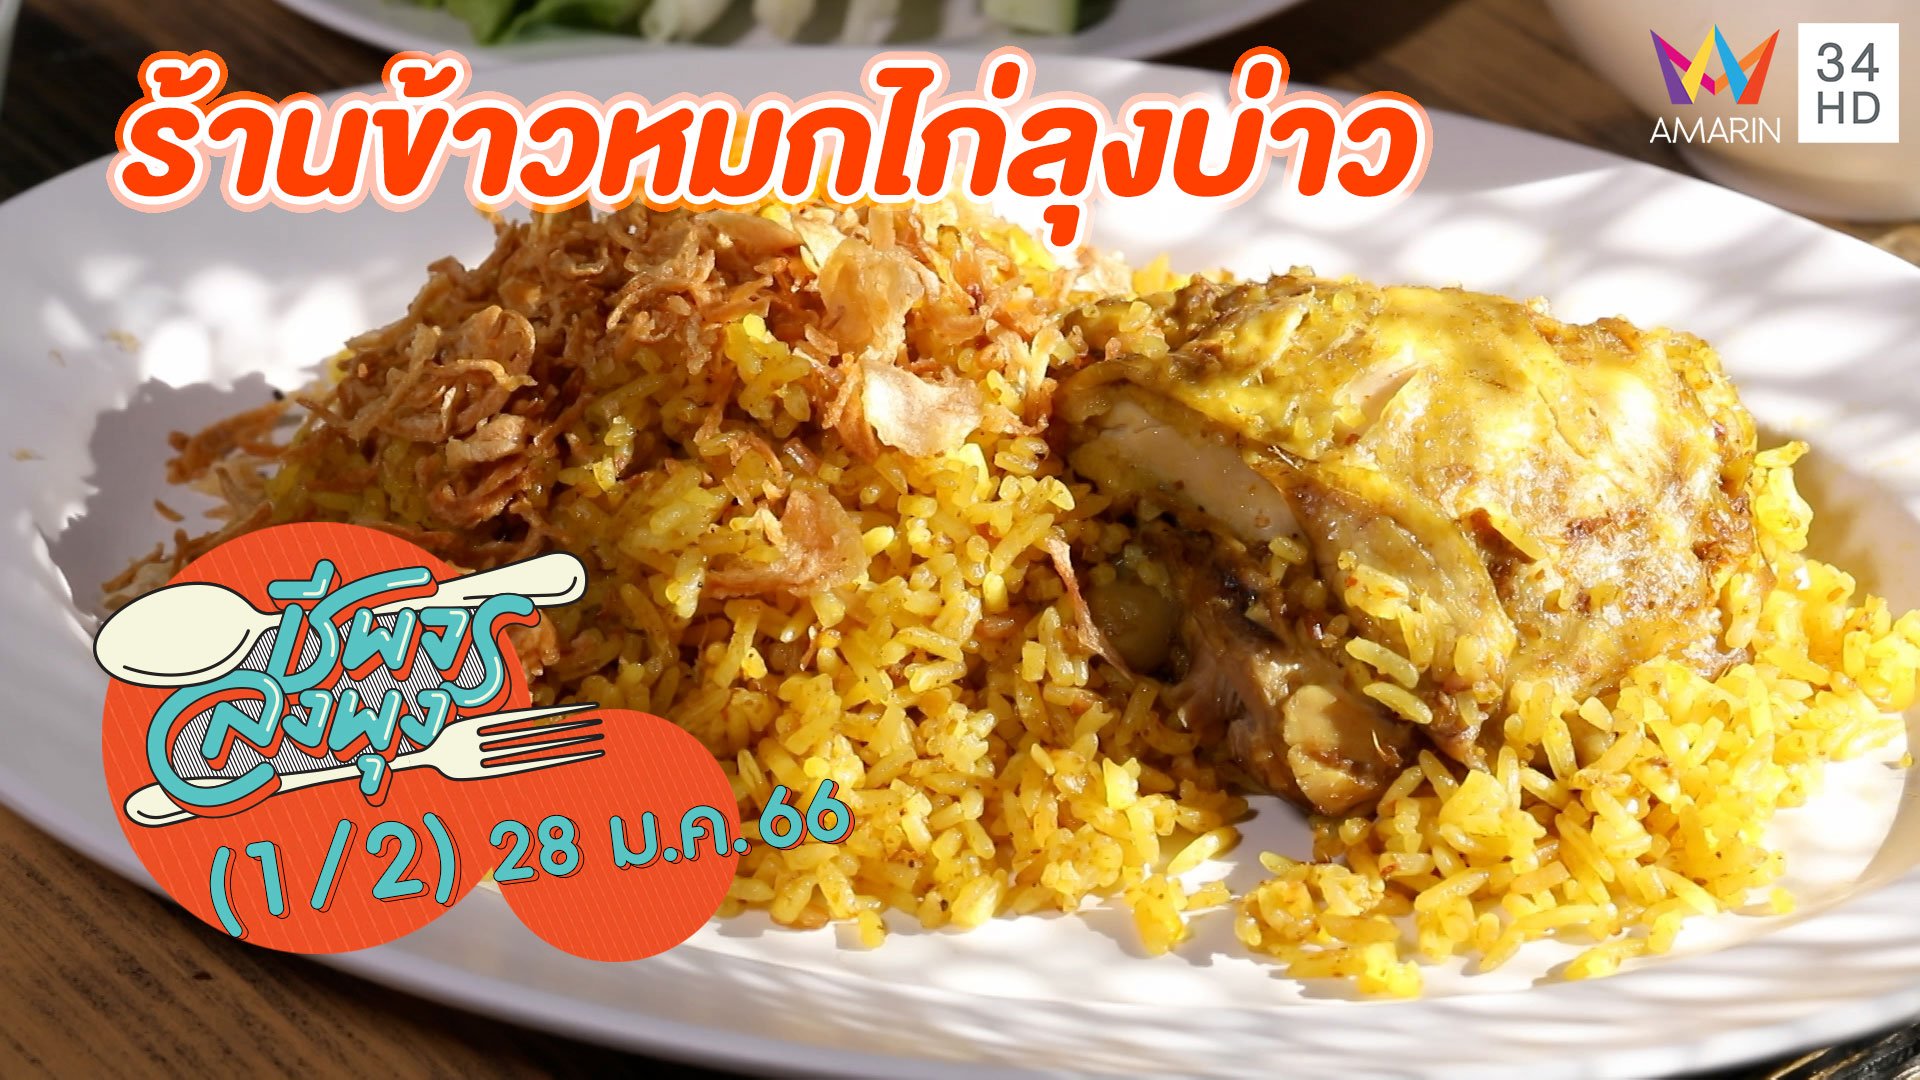 หอมเครื่องเทศทั้งข้าวและเนื้อไก่ @ ร้านข้าวหมกไก่ลุงบ่าว | ชีพจรลงพุง | 28 ม.ค. 66 (1/2) | AMARIN TVHD34